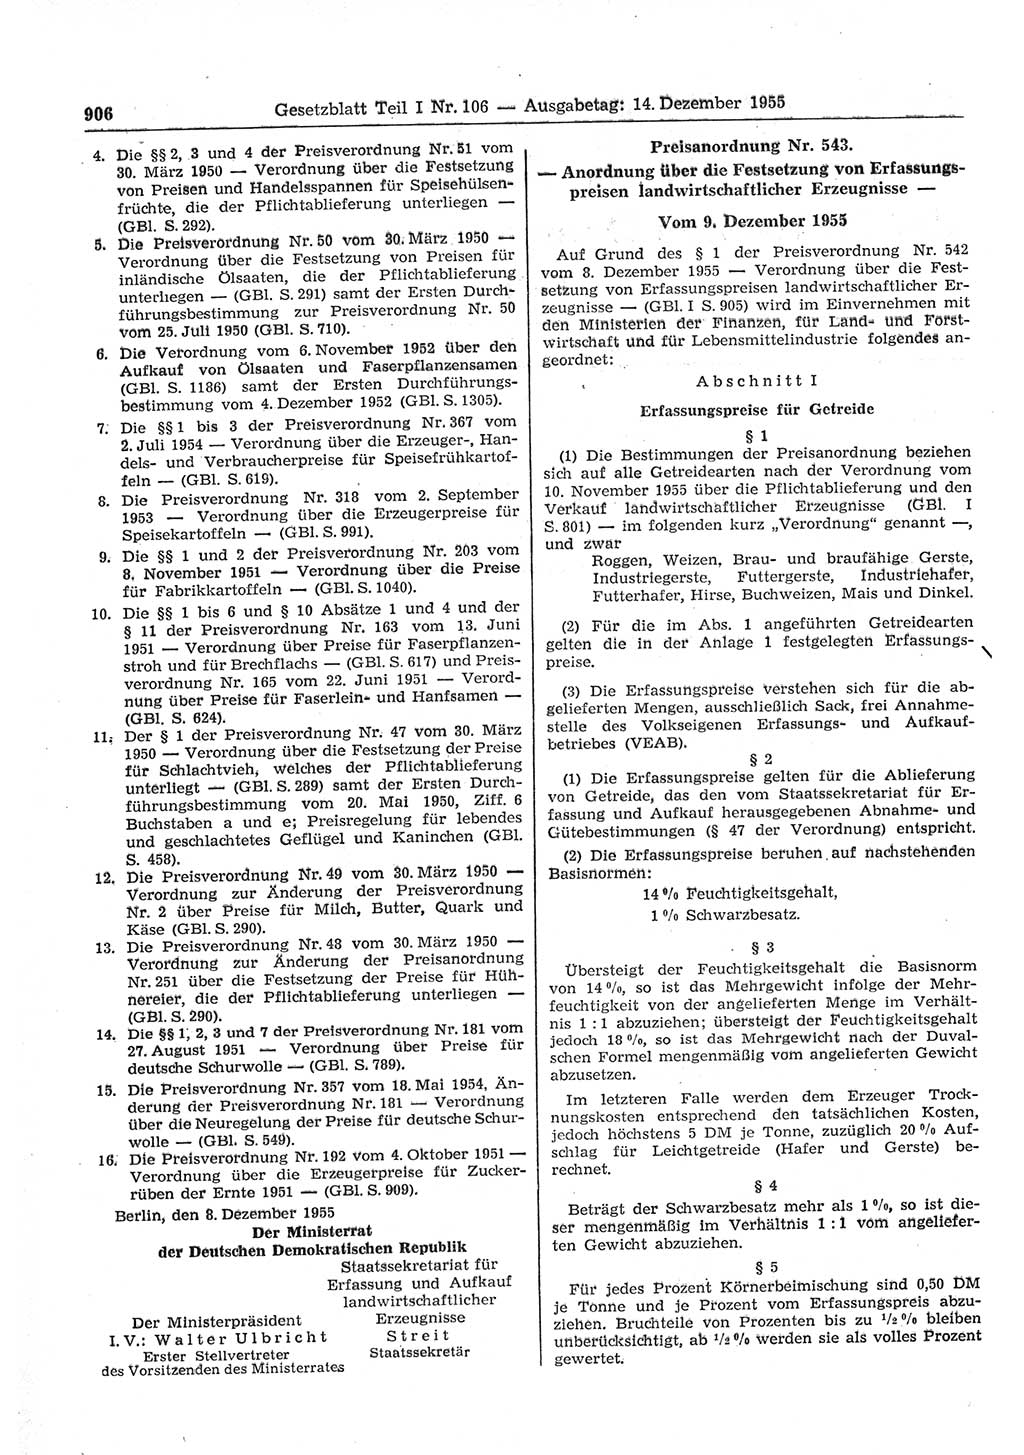 Gesetzblatt (GBl.) der Deutschen Demokratischen Republik (DDR) Teil Ⅰ 1955, Seite 906 (GBl. DDR Ⅰ 1955, S. 906)